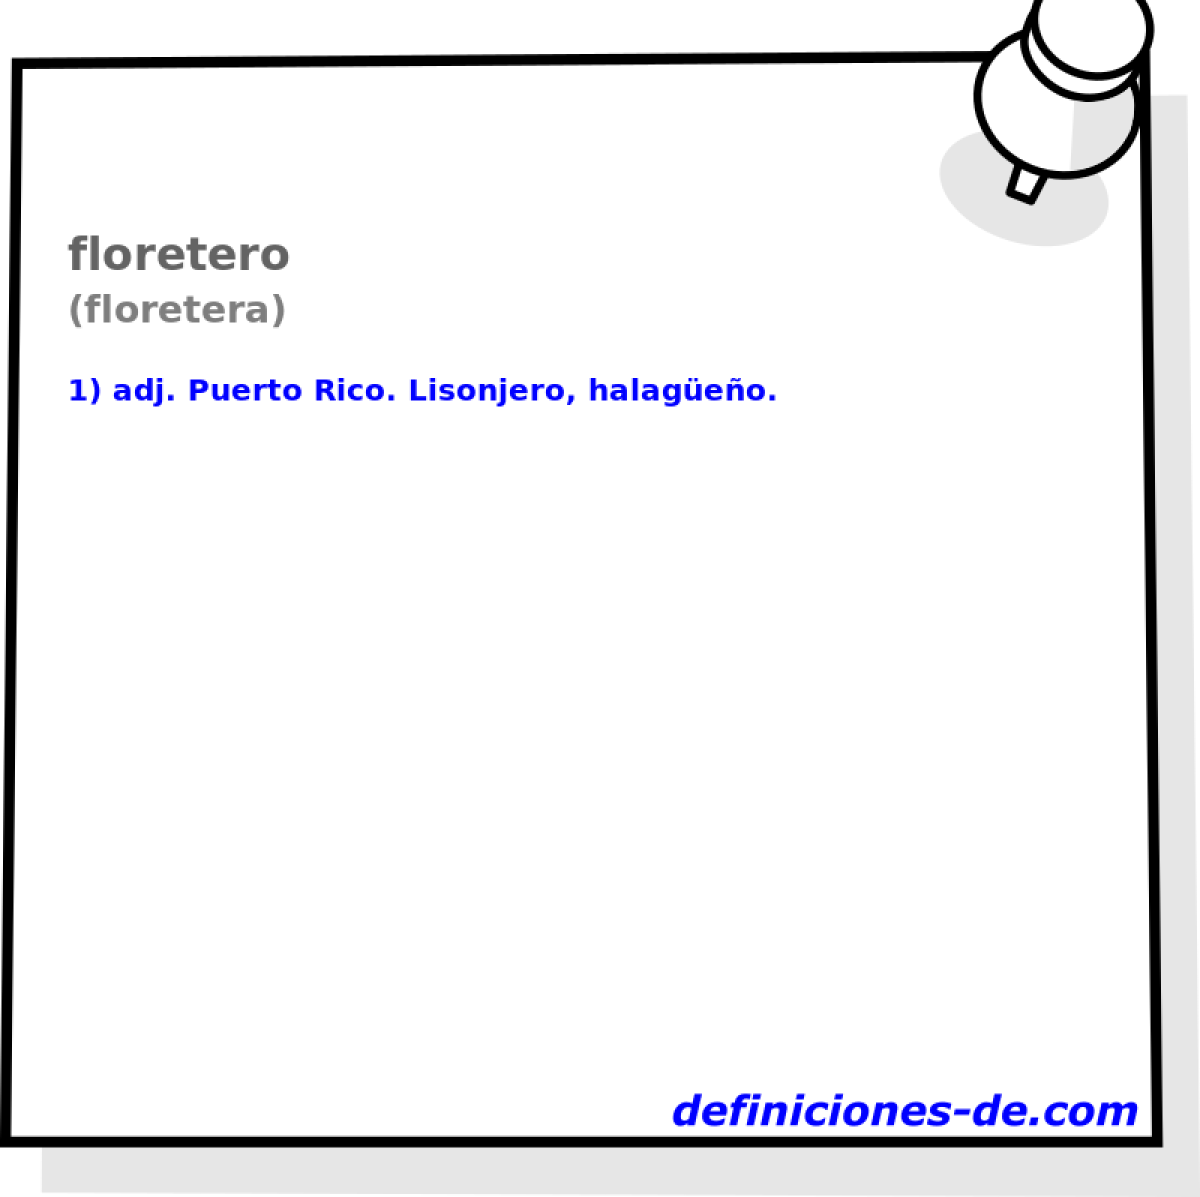 floretero (floretera)